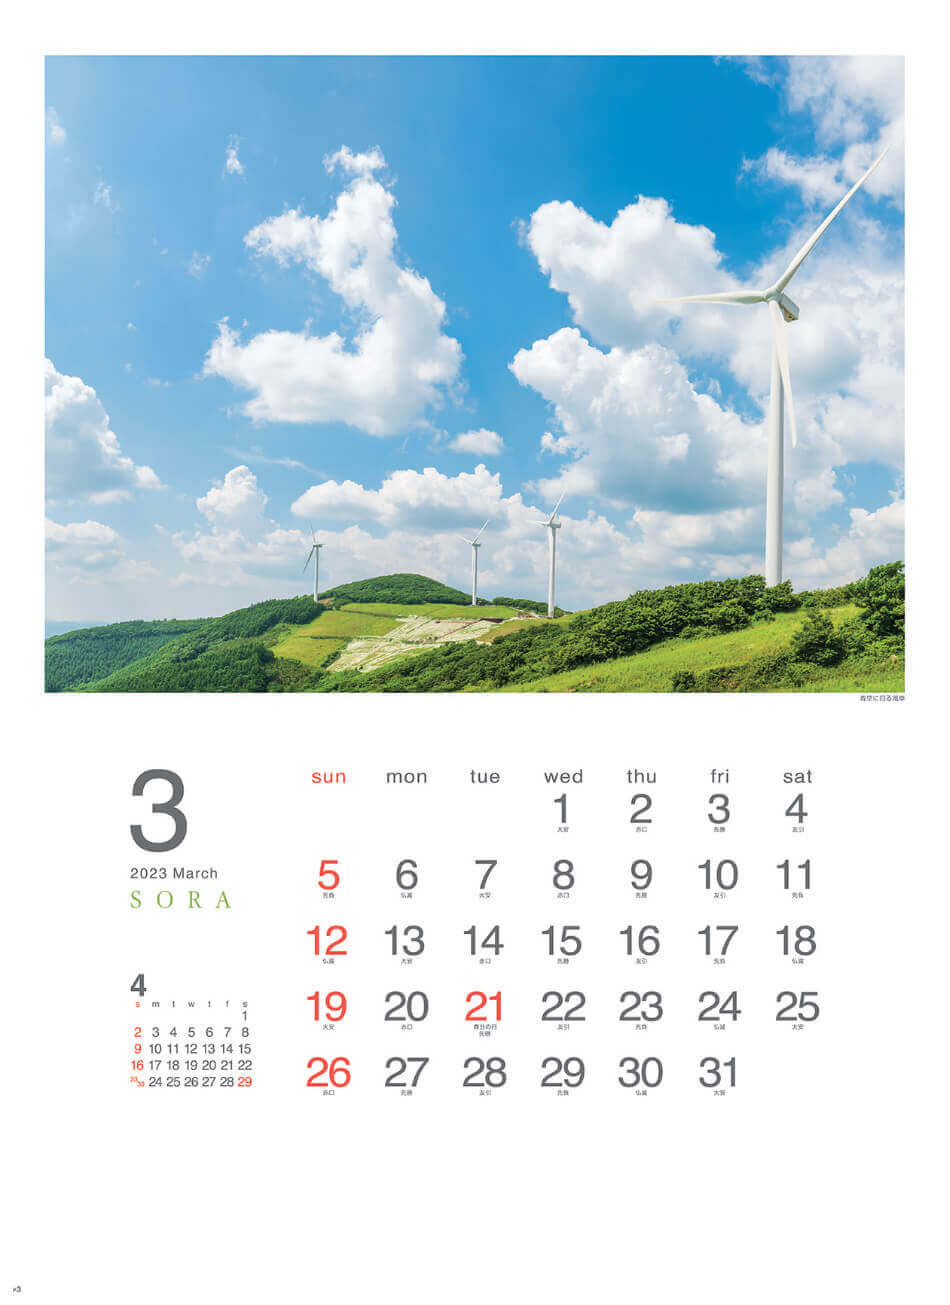 3月 青空に回る風車 SORA -空- 2023年カレンダーの画像